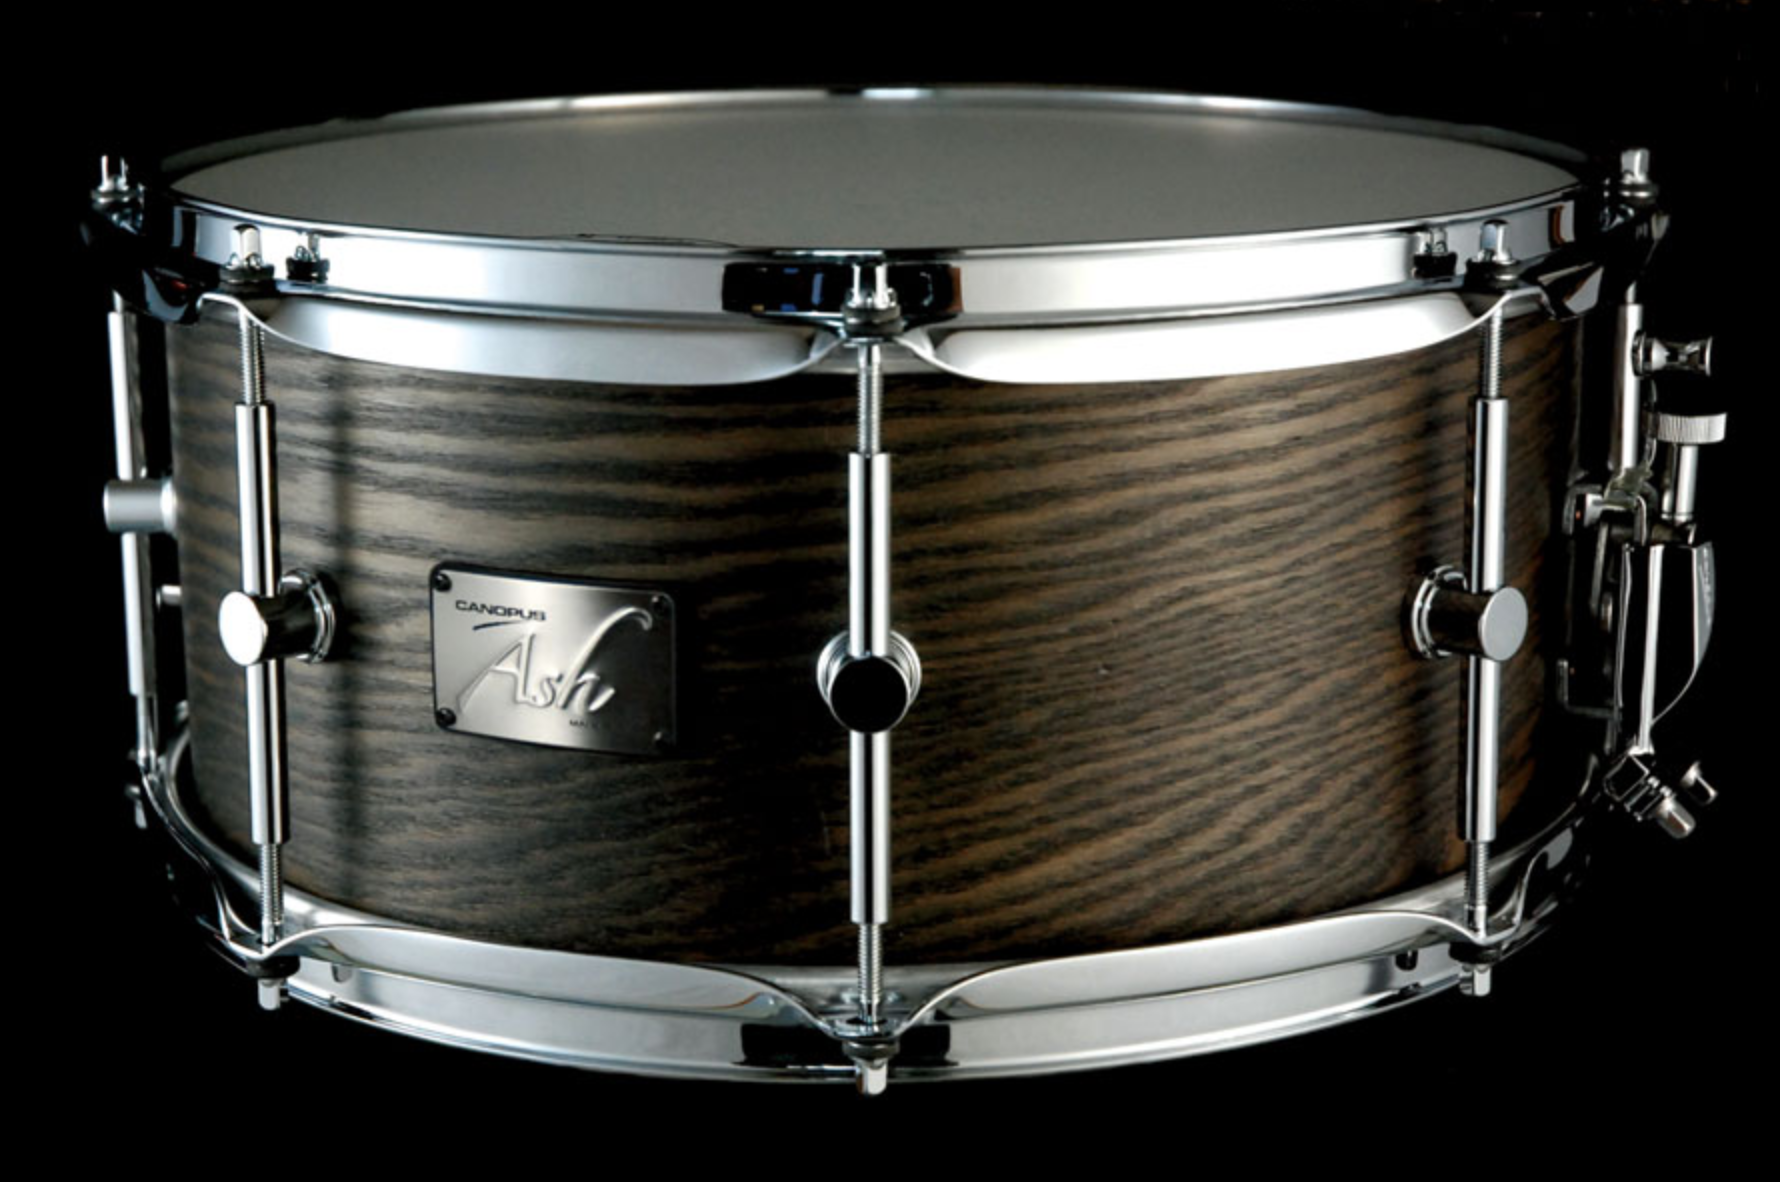 Canopus Ash Series Snare Drum